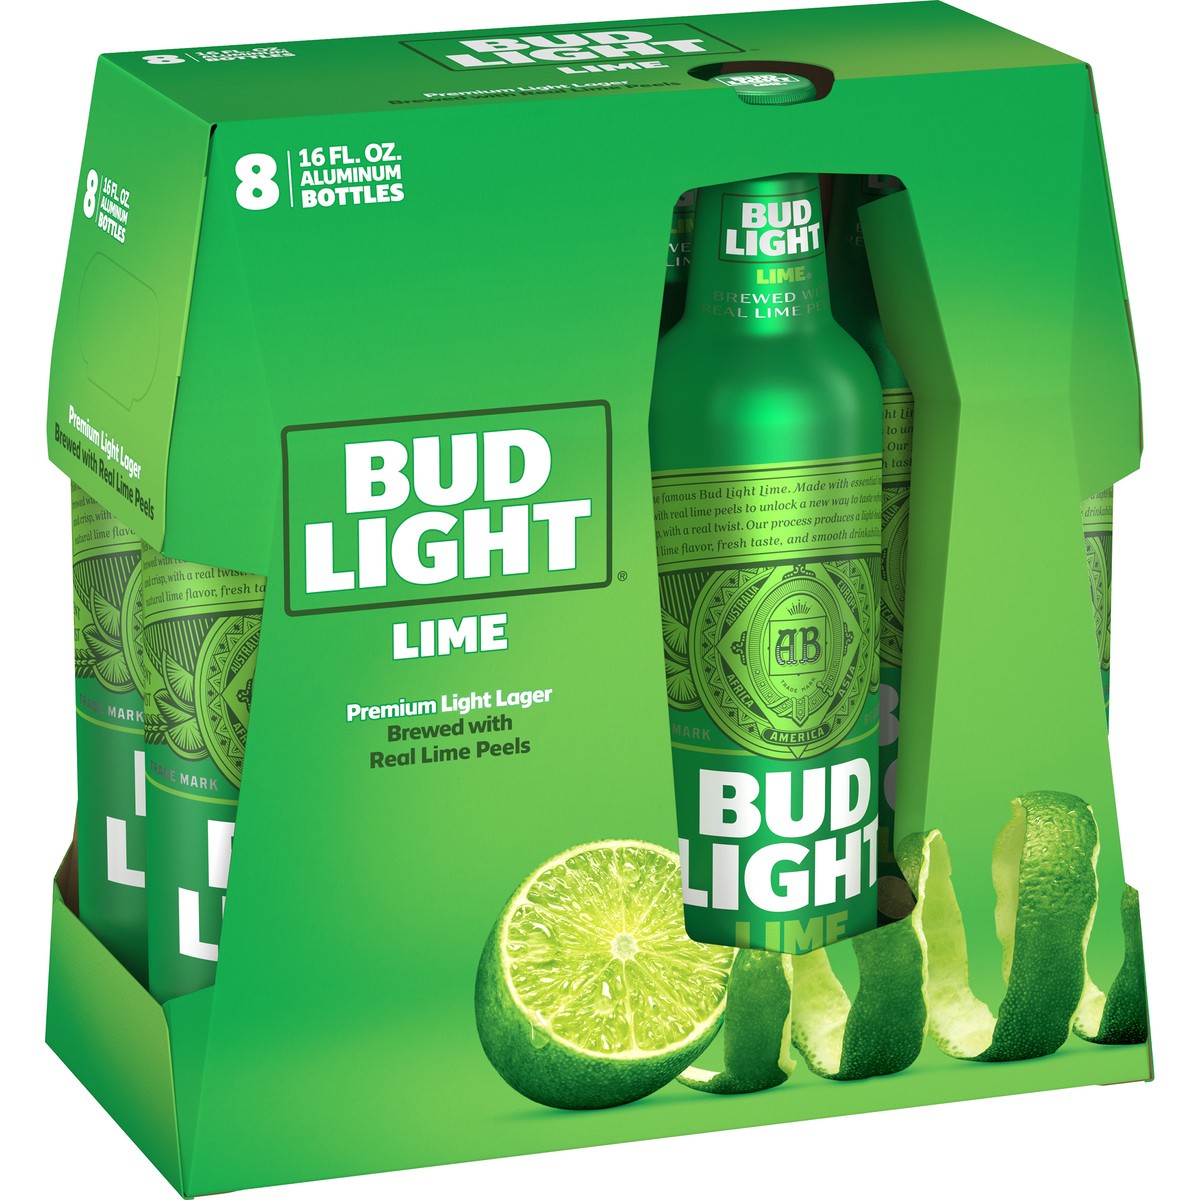 slide 2 of 3, Bud Light Lime Beer Aluminum, 4.2% ABV, 8 bottles / 16 fl oz